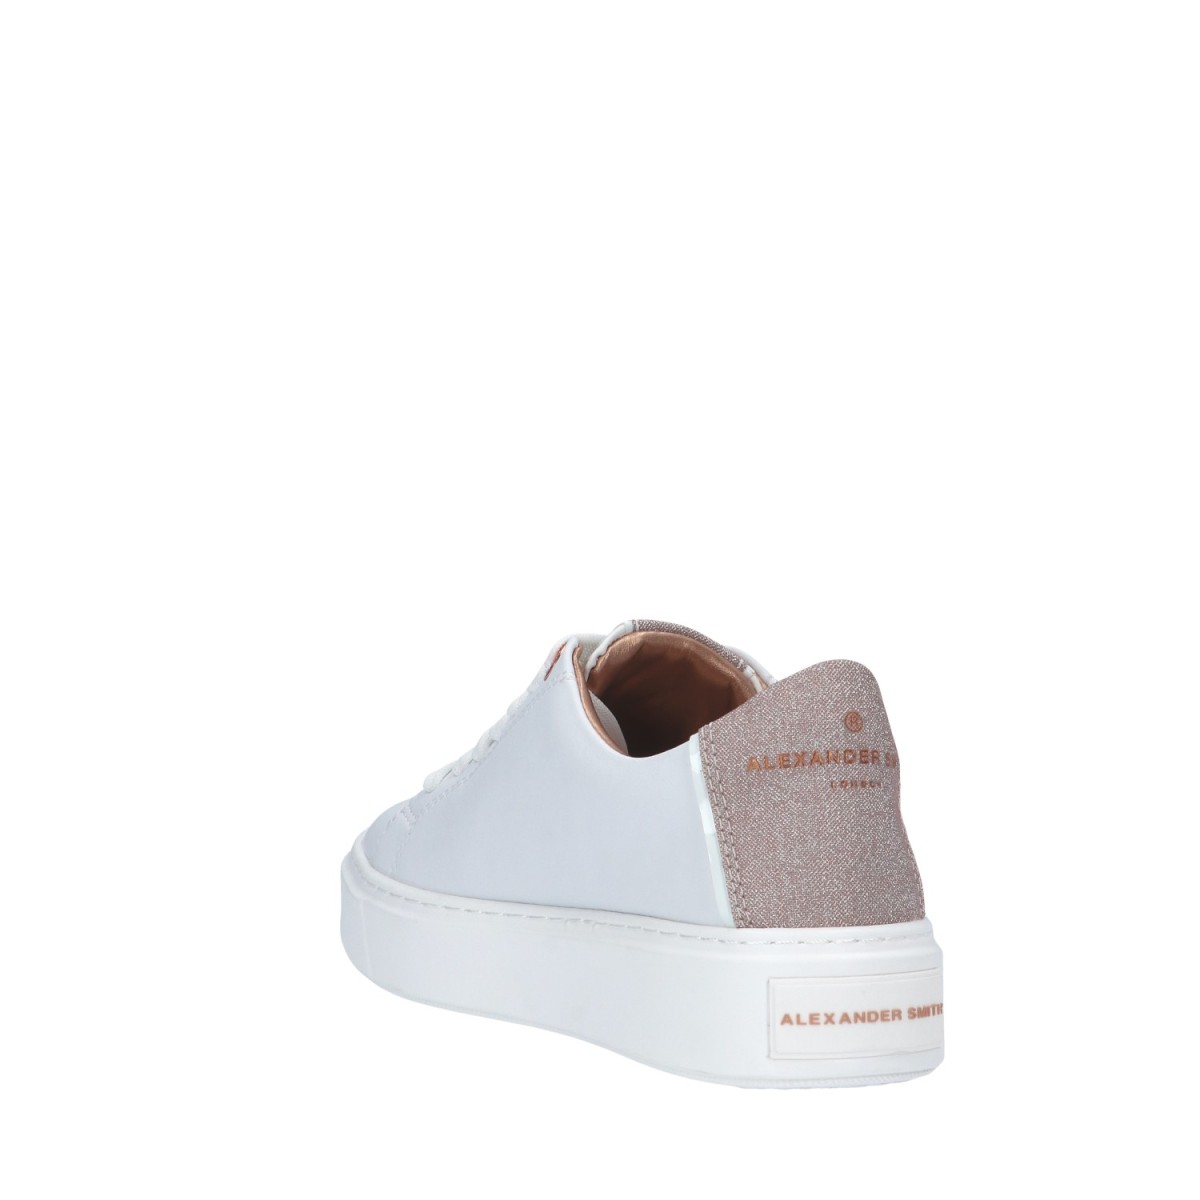 Alexander smith Sneaker Bianco/rame Gomma LDW-8290-WCP